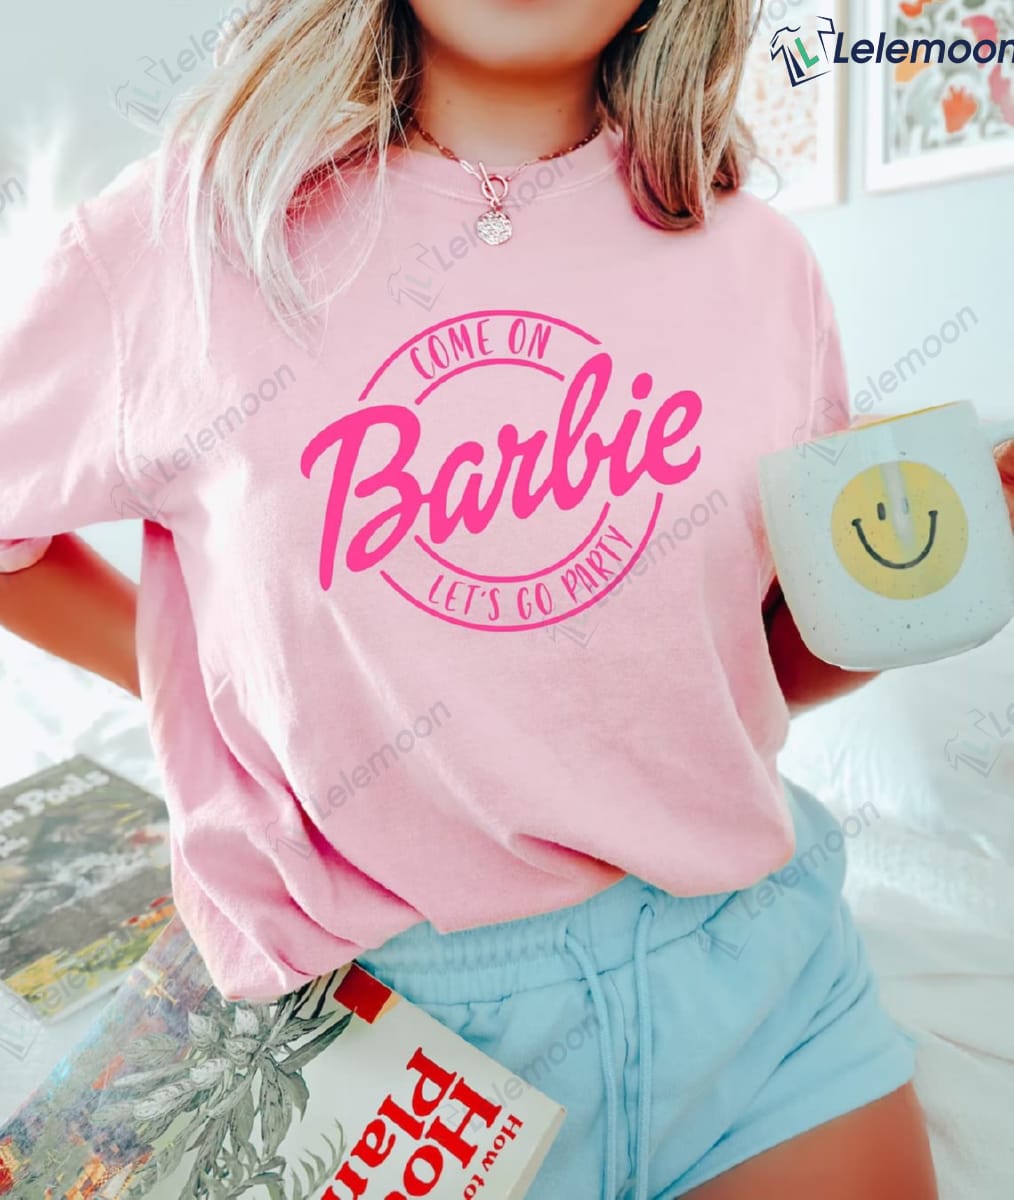 Come On Barbie Let S Go Party T Shirt Lelemoon